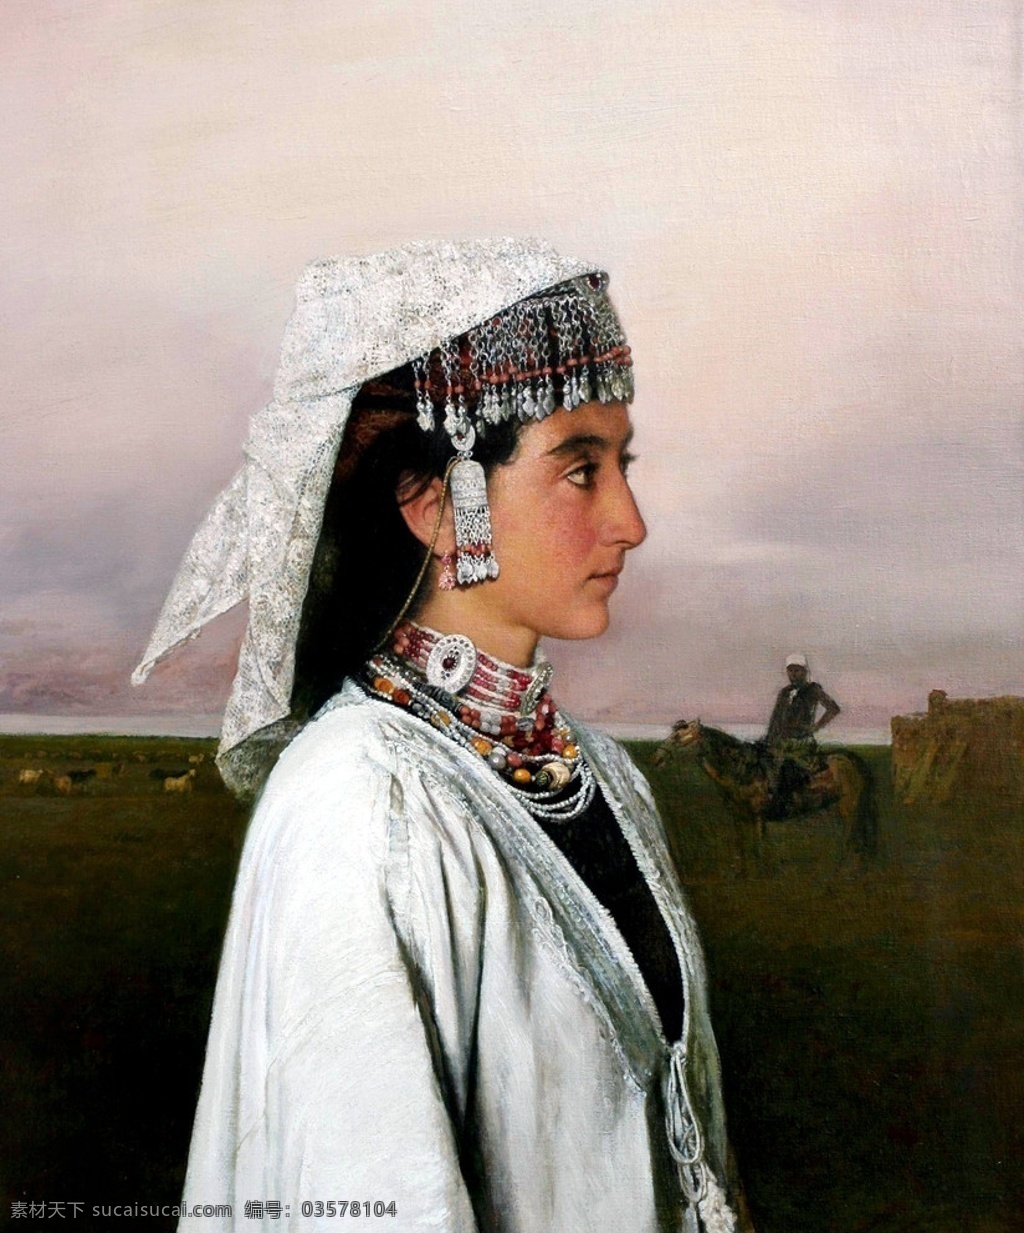 遥远 地方 美术 绘画 油画 女人 女子 姑娘 少女 维族人 表情 动作 姿势 油画艺术 油画作品27 绘画书法 文化艺术